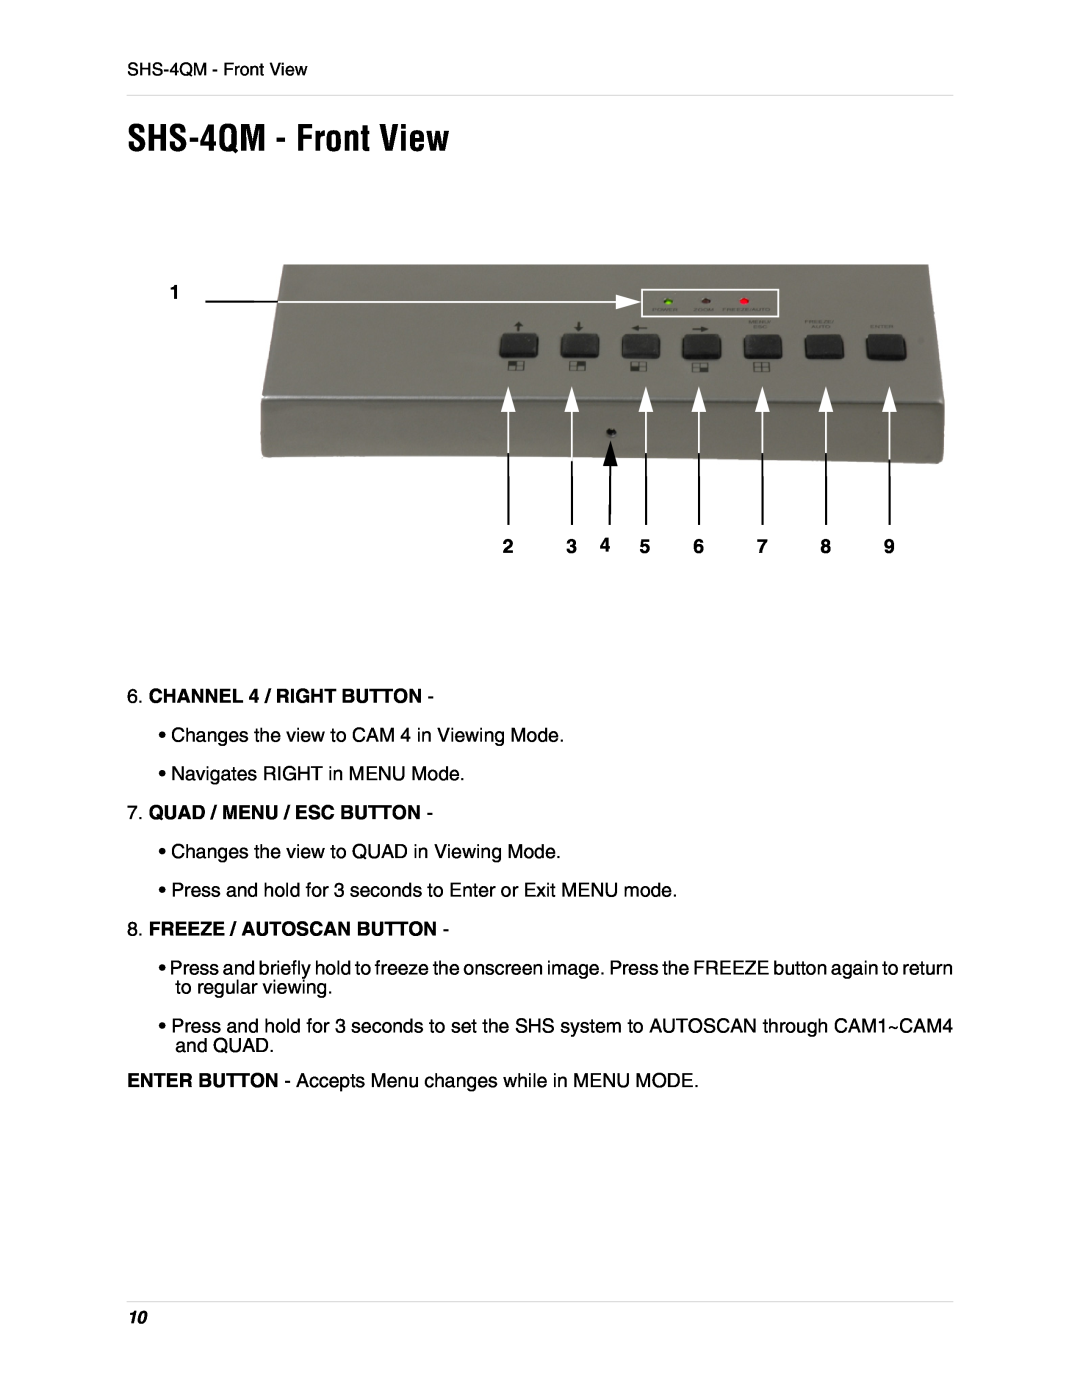 LOREX Technology SHS-4QM - Front View, CHANNEL 4 / RIGHT BUTTON, Quad / Menu / Esc Button, Freeze / Autoscan Button 